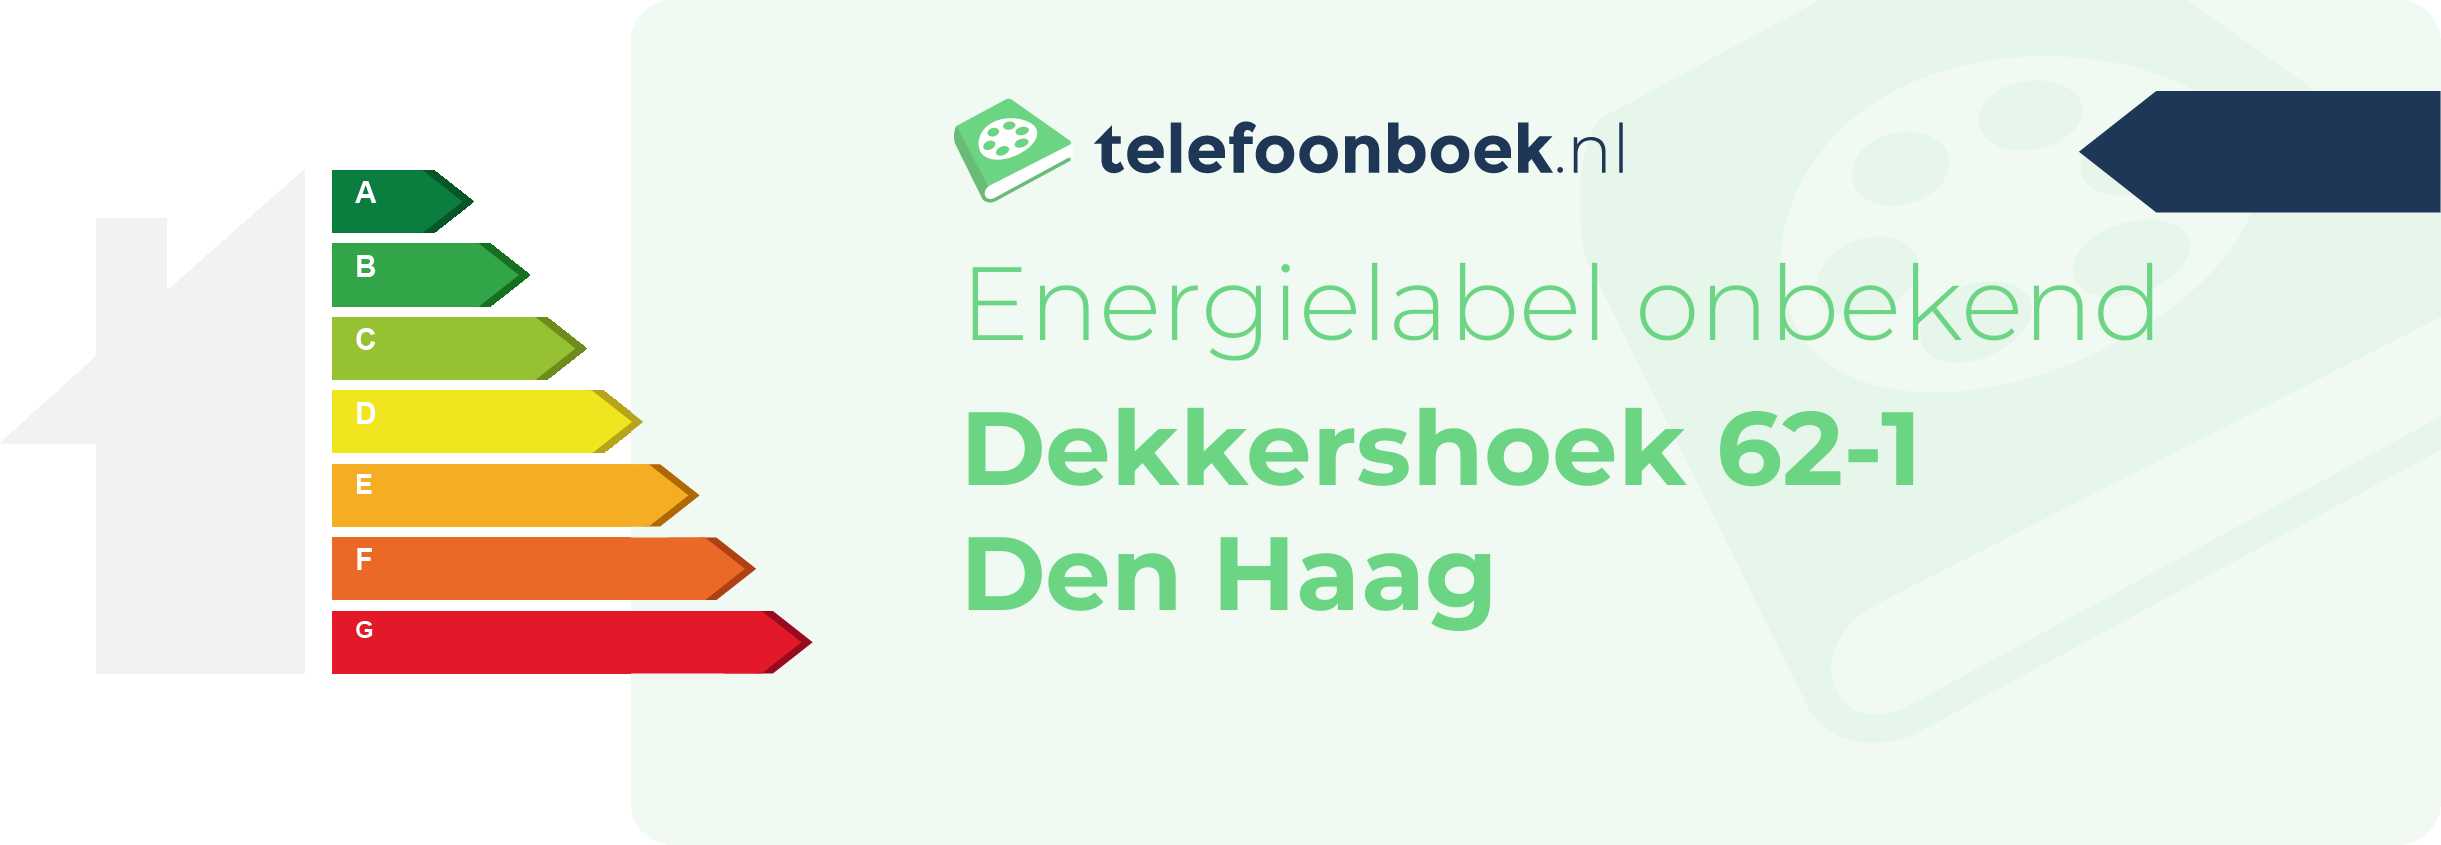 Energielabel Dekkershoek 62-1 Den Haag